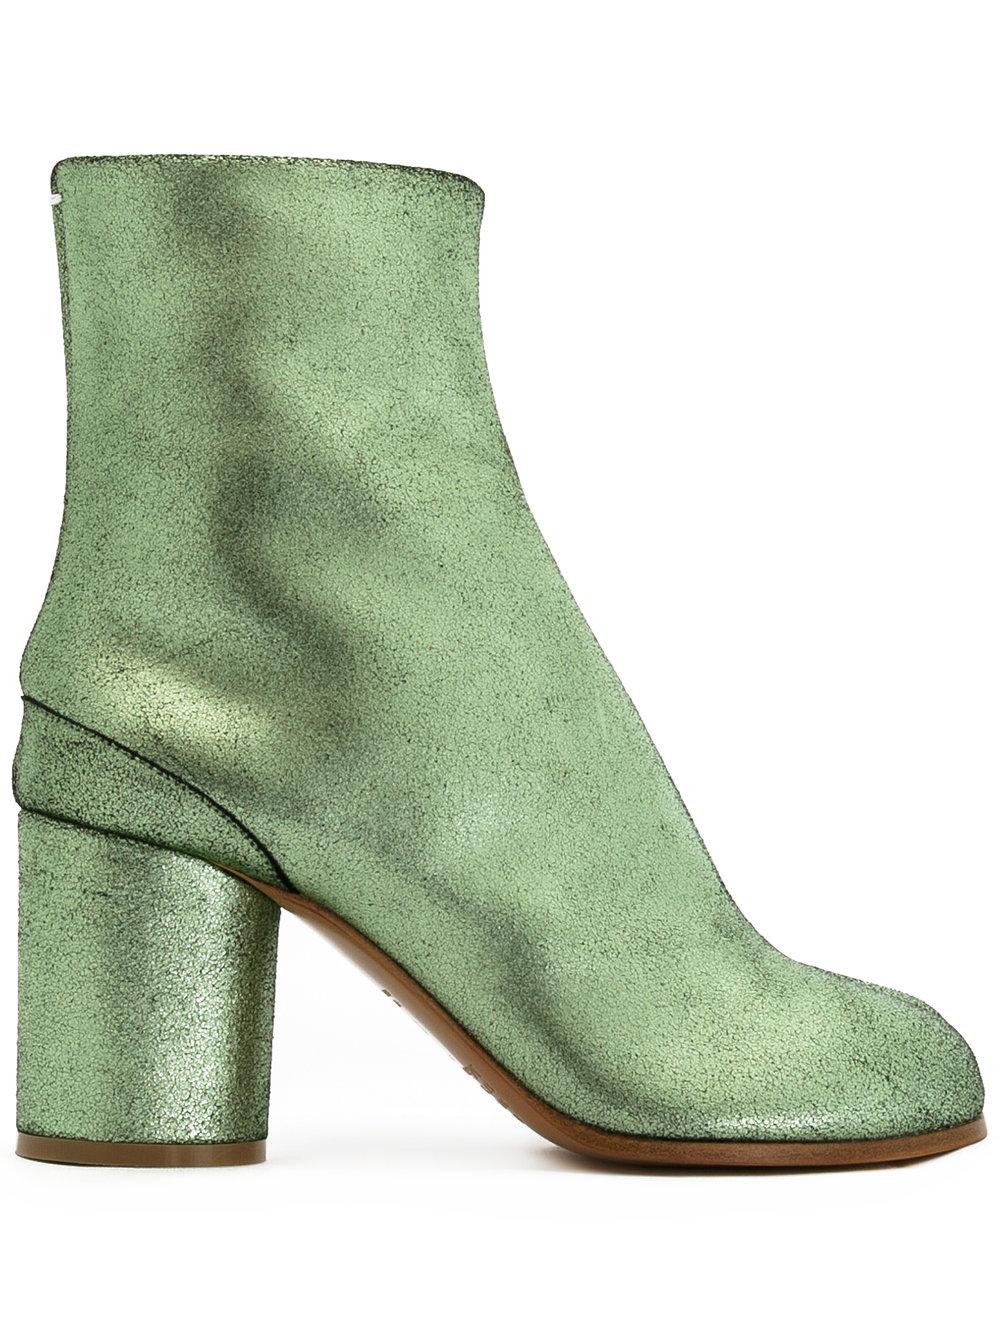 Maison Margiela Leather Split Toe Boots in Green - Lyst